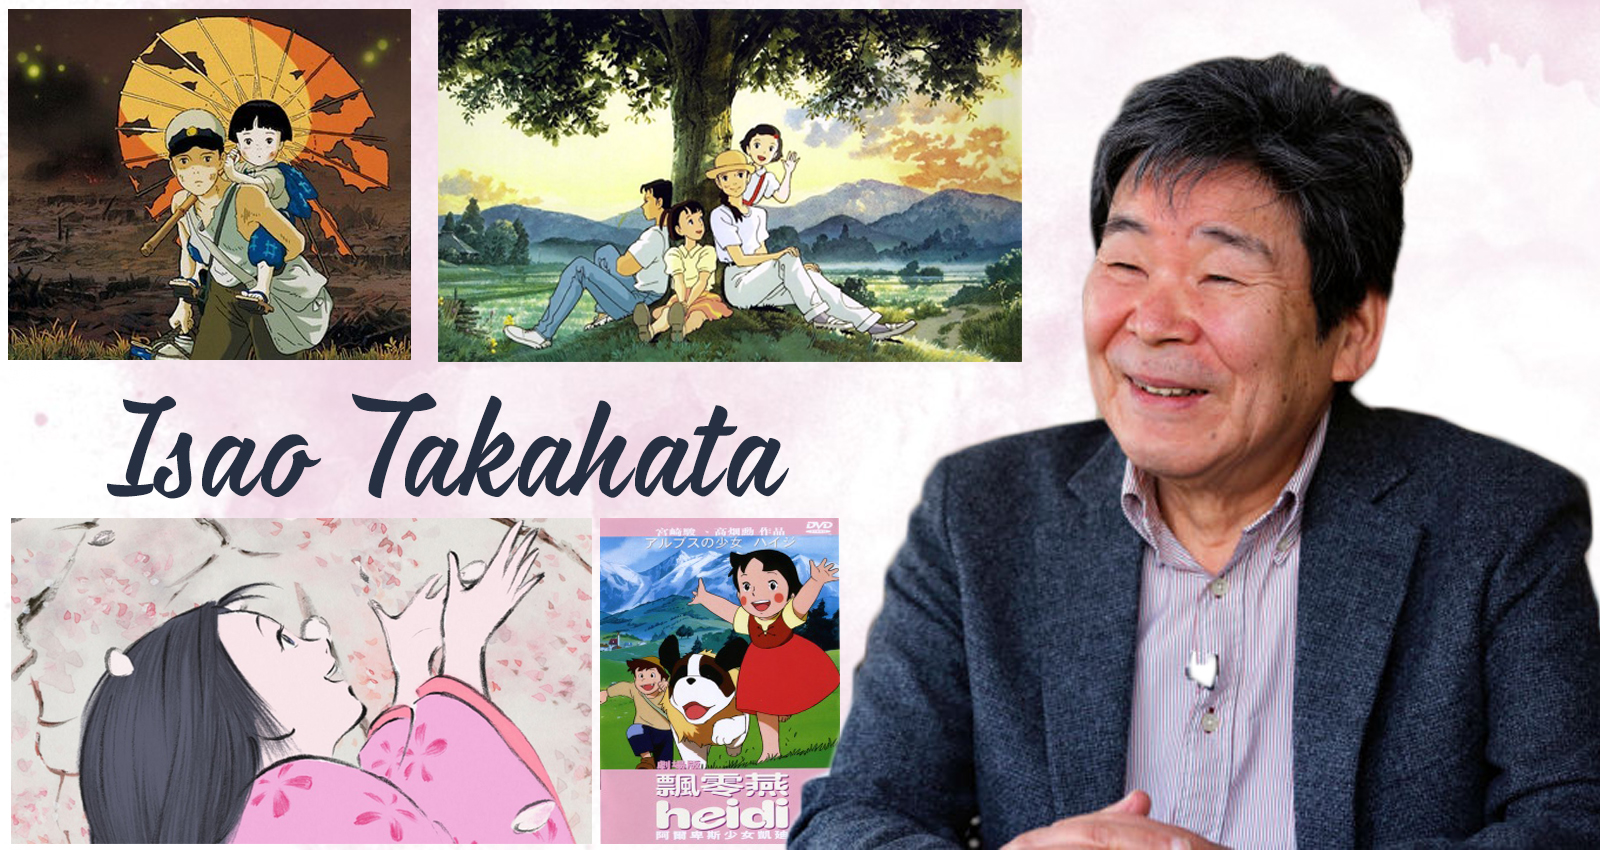 Isao Takahata đã để lại rất nhiều tác phẩm nổi bật và cống hiến cho những bộ phim làm nên tên tuổi của Ghibli Studio